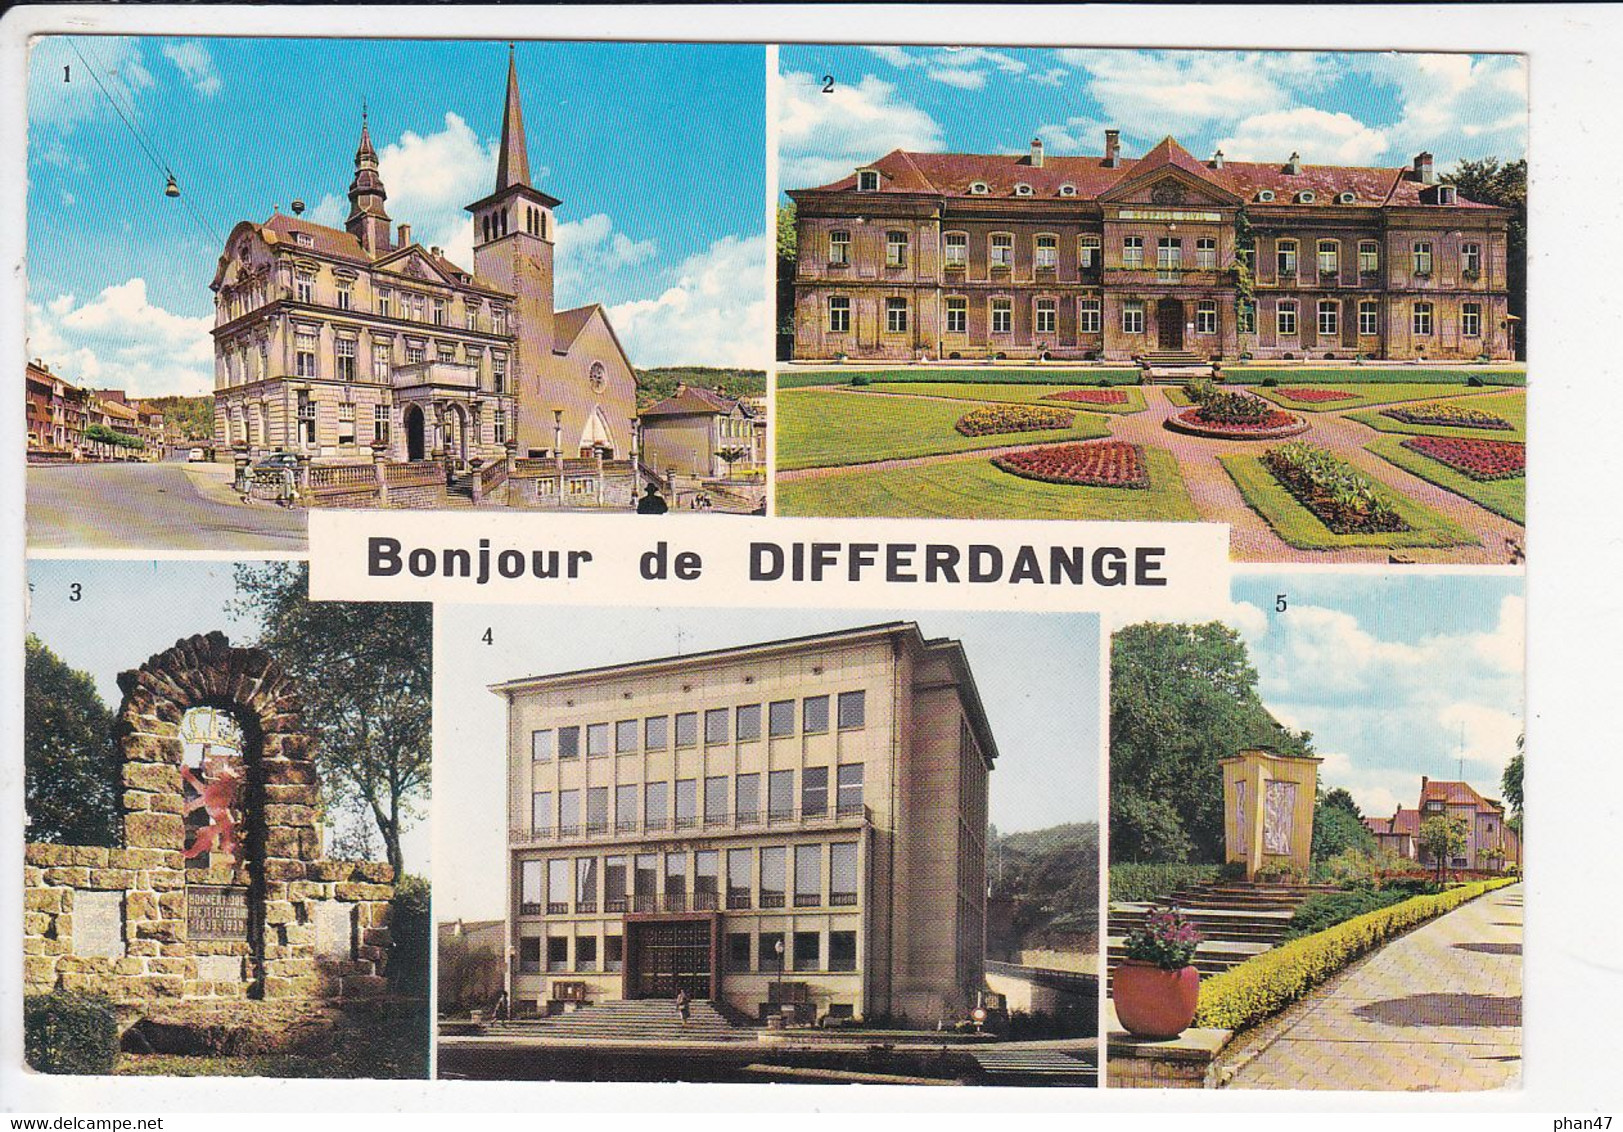 LUXEMBOURG, Bonjour De DIFFERDANGE, Hôpital, Obercorn Monument Aux Morts, Eglise, Ed. Paul Kraus 1980 Environ - Differdingen